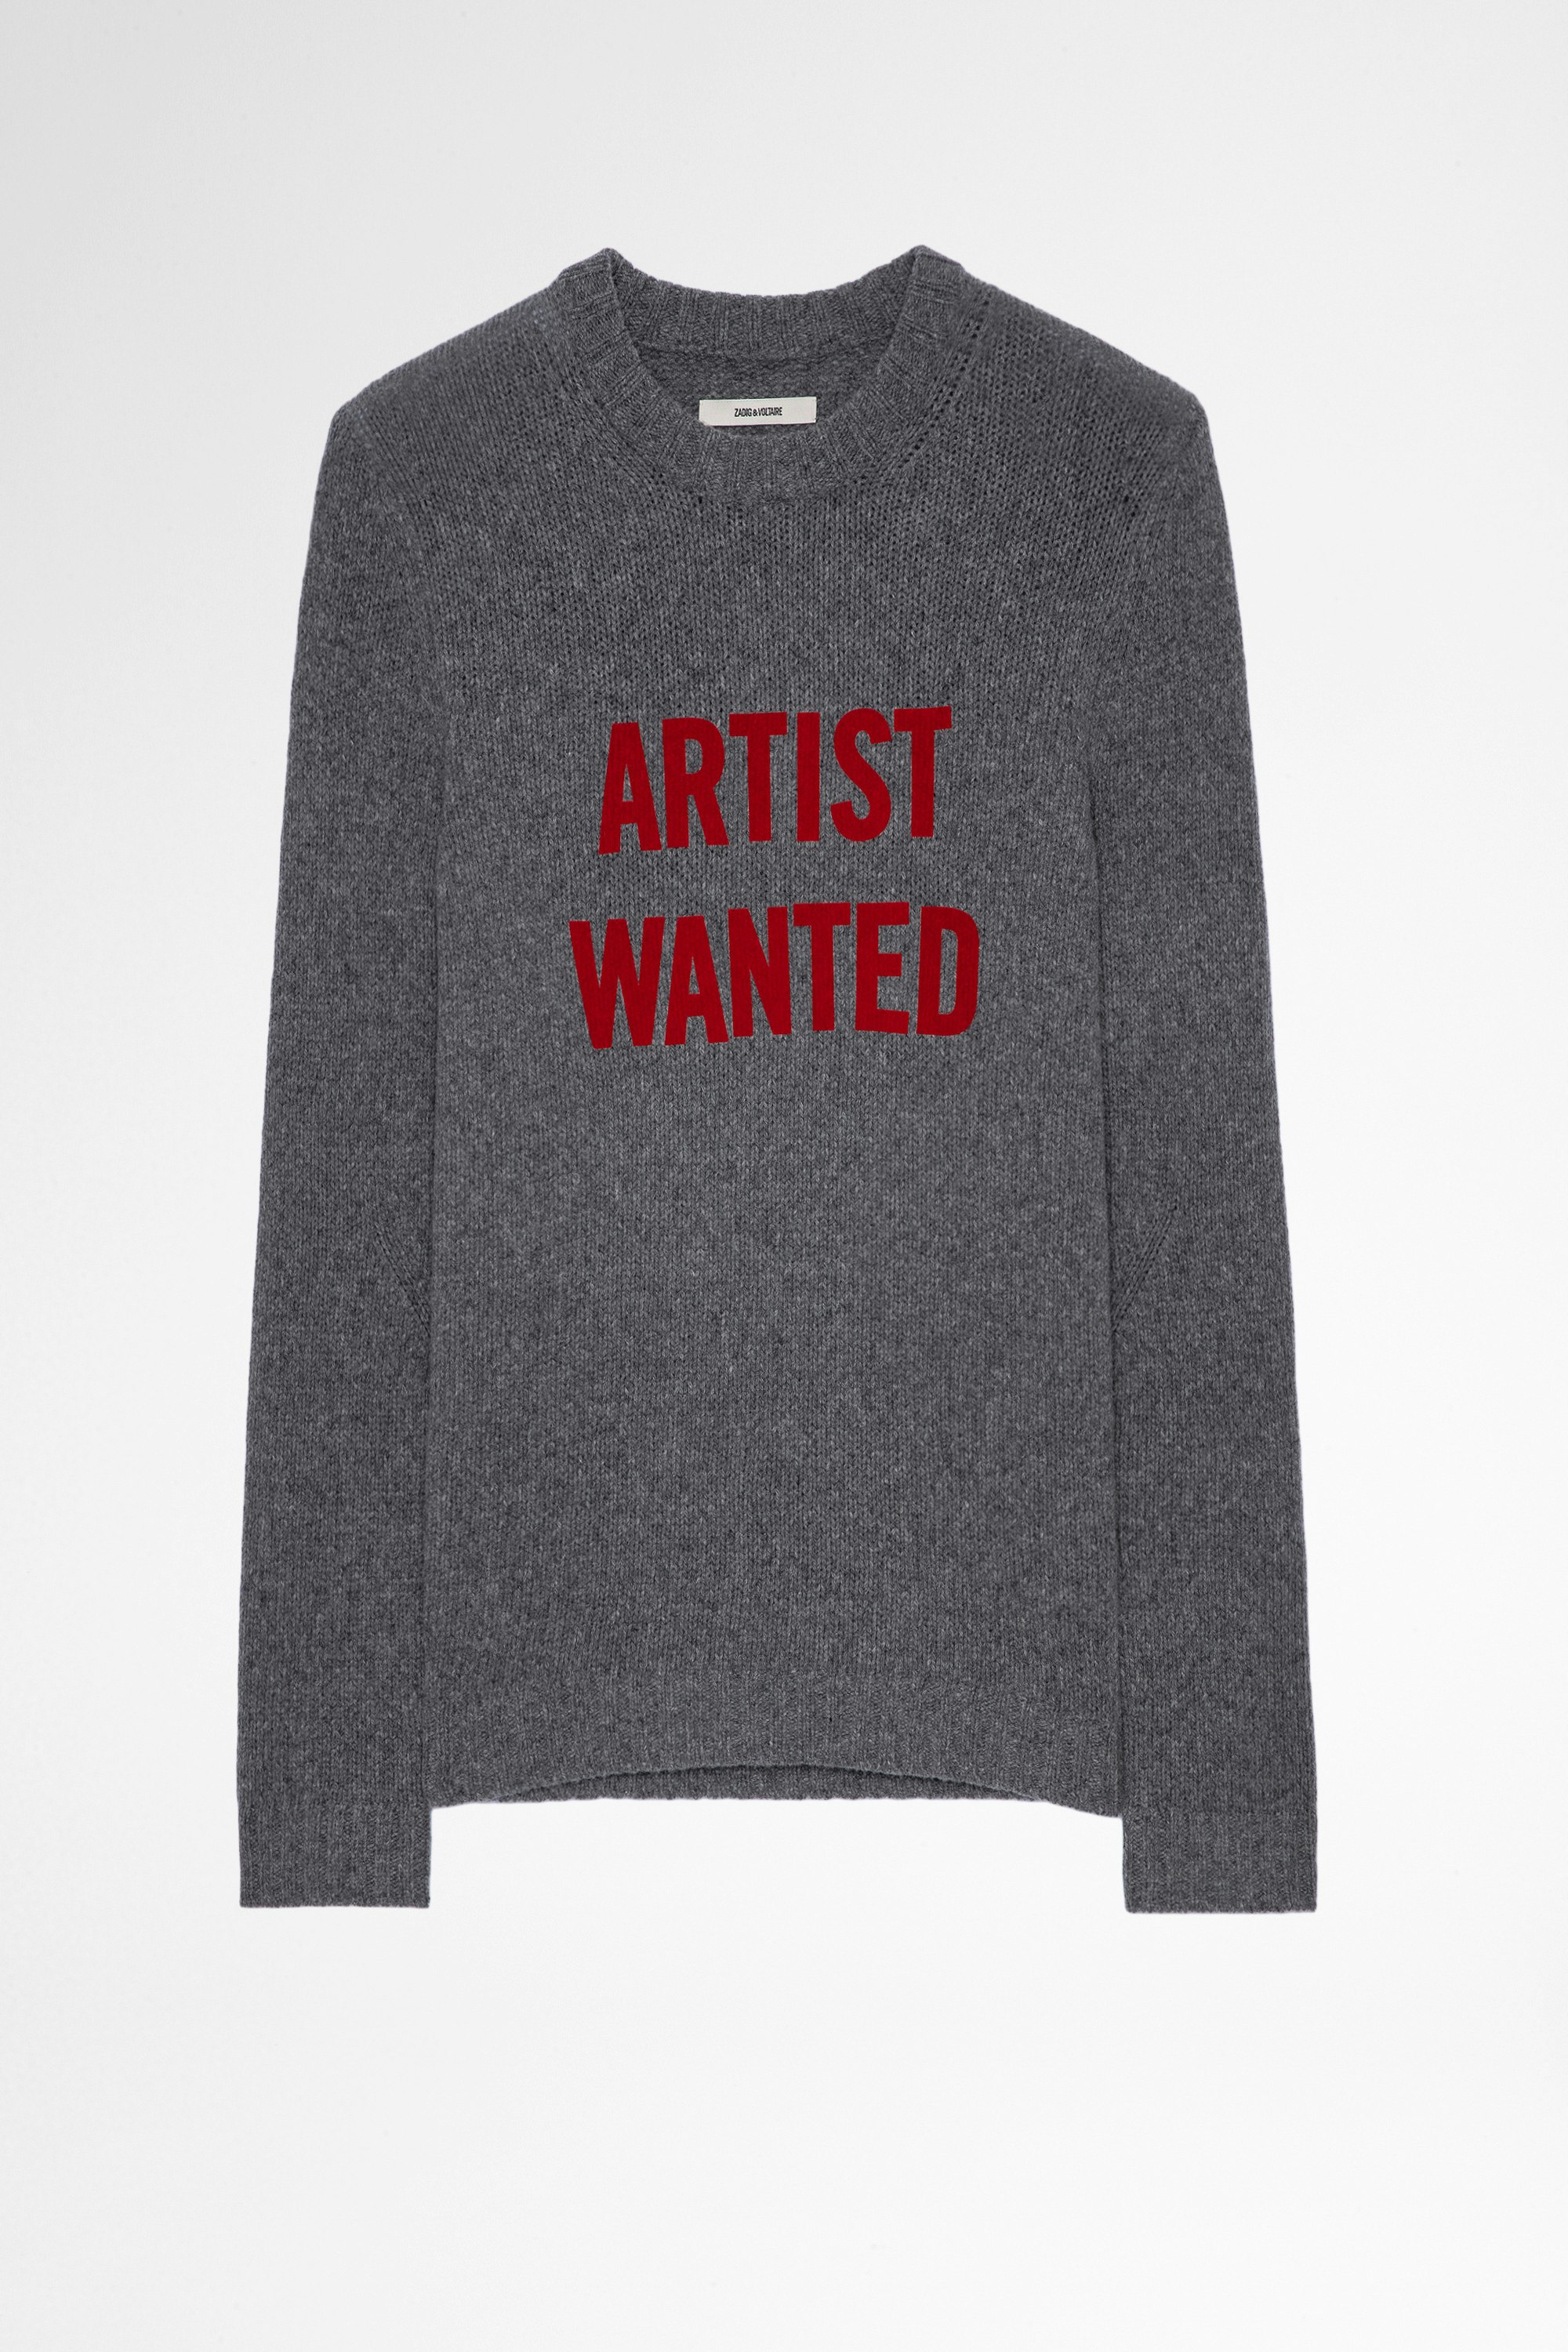 Maglione Kennedy Artist Wanted Maglione in lana merino grigio Artis Wanted, uomo